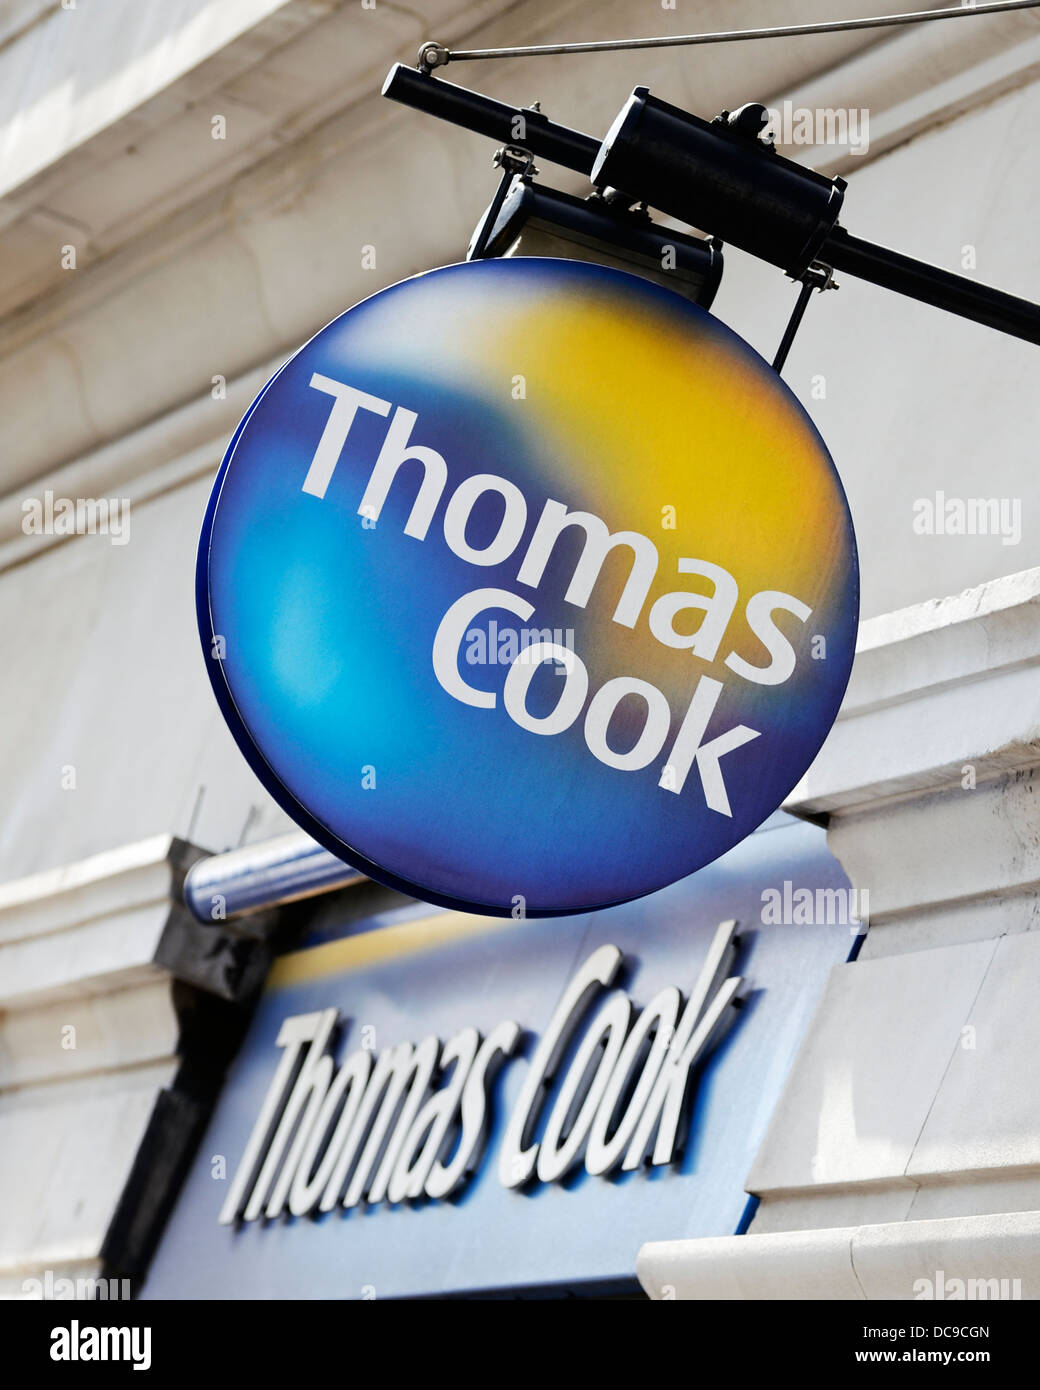 Thomas Cook Reisebüros Shop Zeichen, Marble Arch, London, UK. Stockfoto